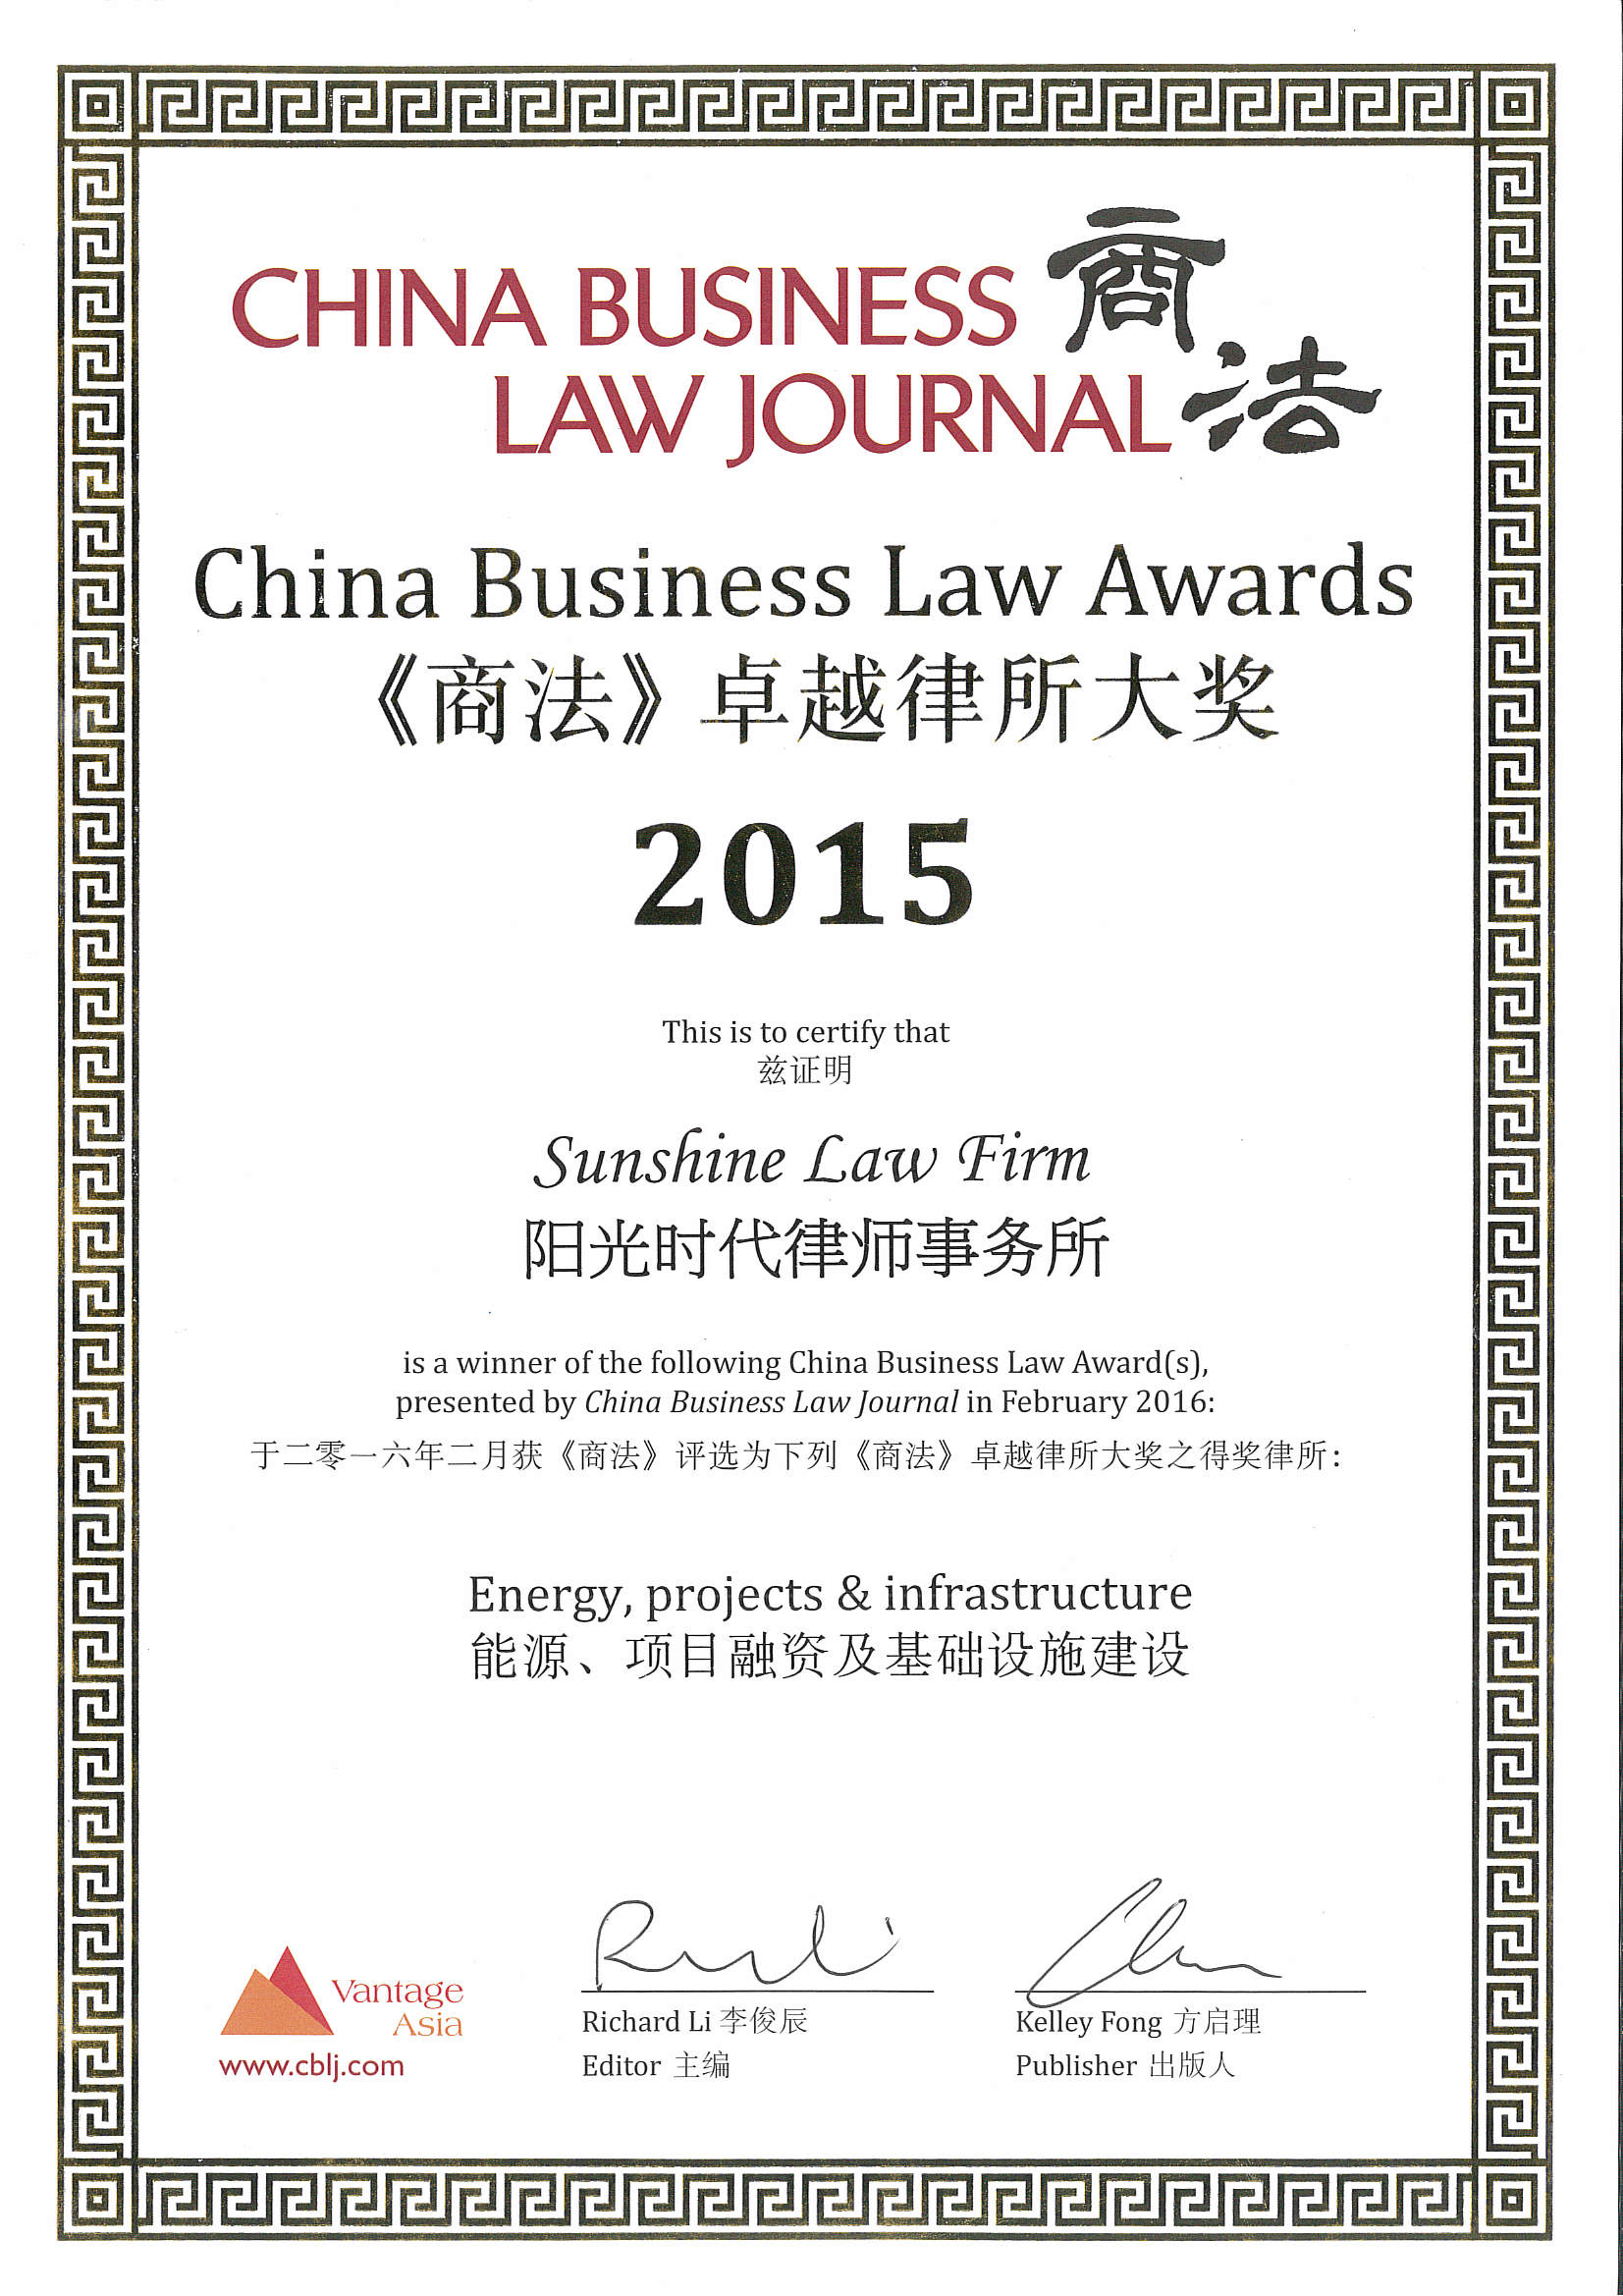 《商法》2015年度“能源、项目融资及基础设施建设”卓越律所大奖